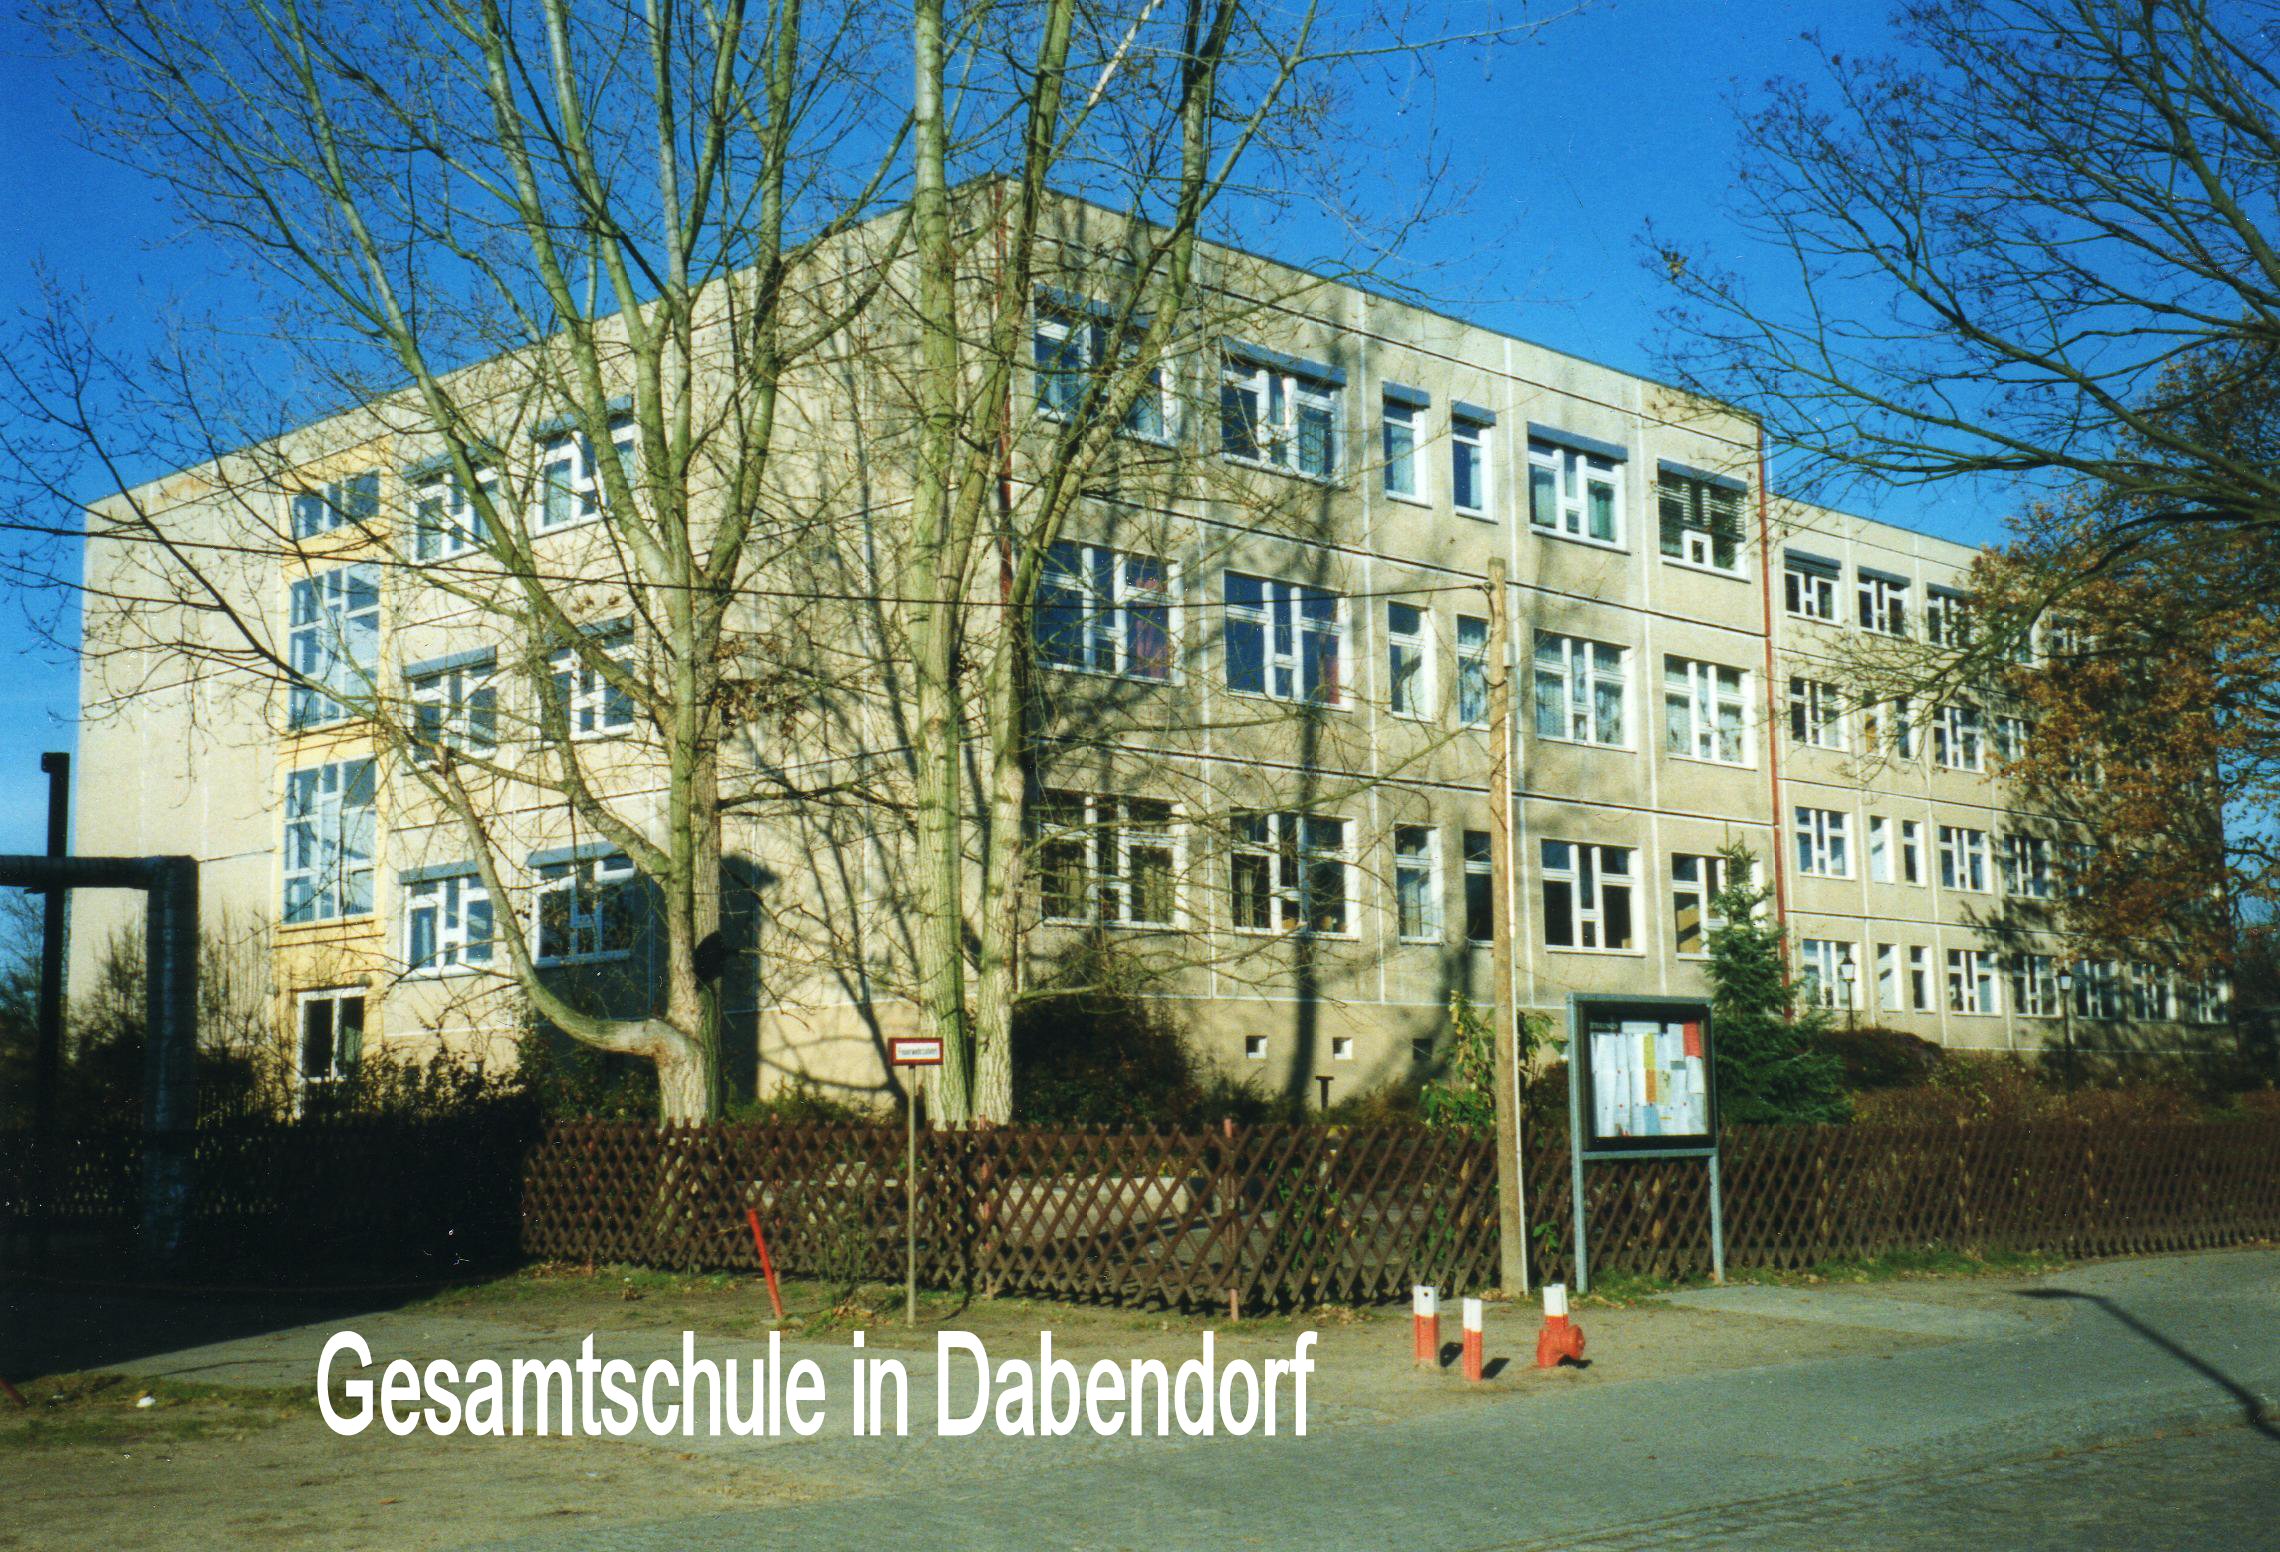 2021 06 08 4 Gesamtschule Dabendorf 1985 eingeweiht